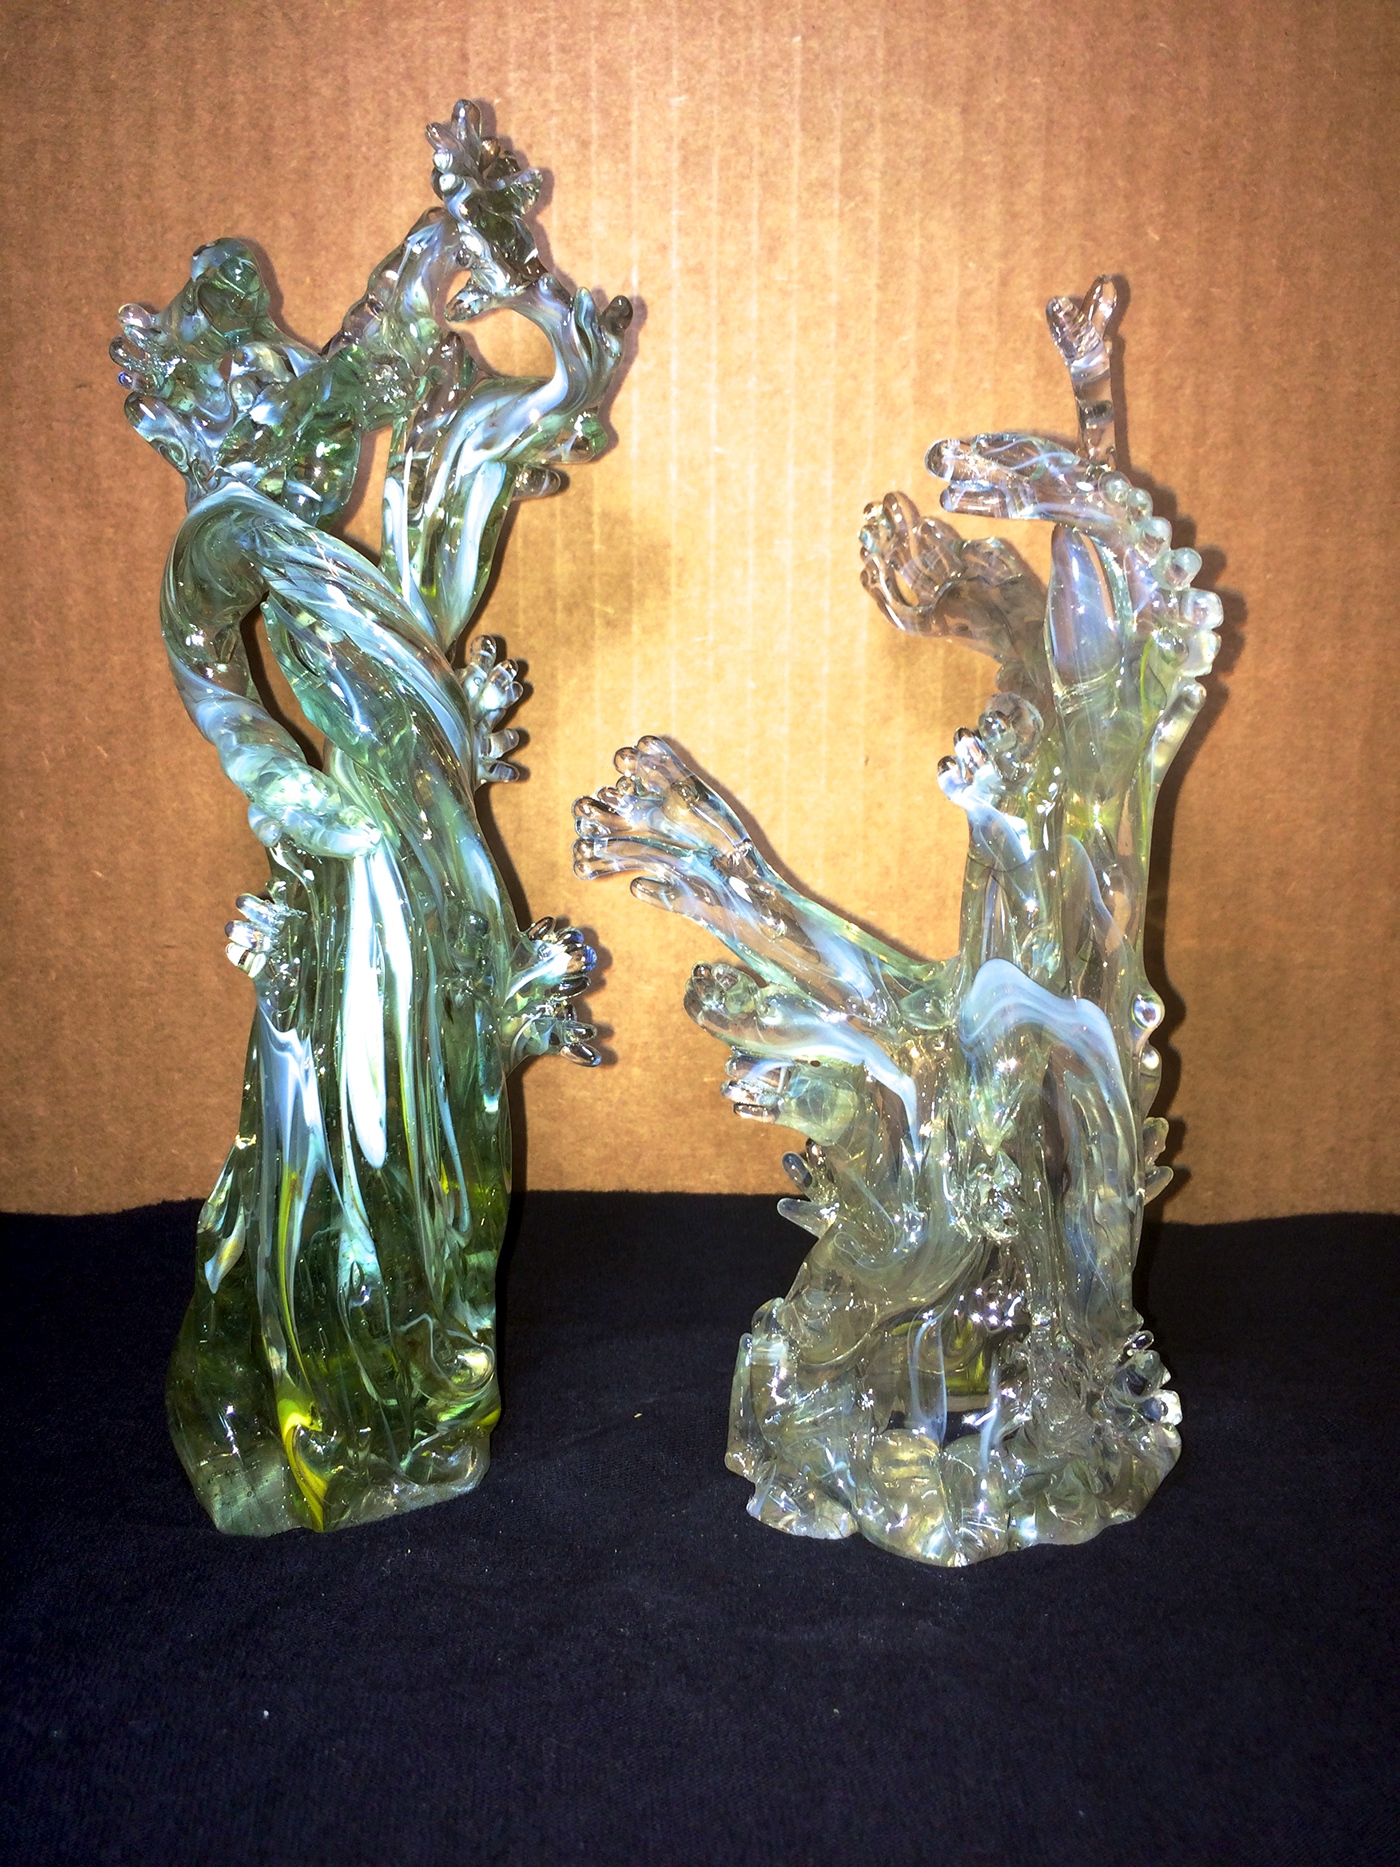 sculpture glass handmade glassblowing glass sculpture glasswork fine art